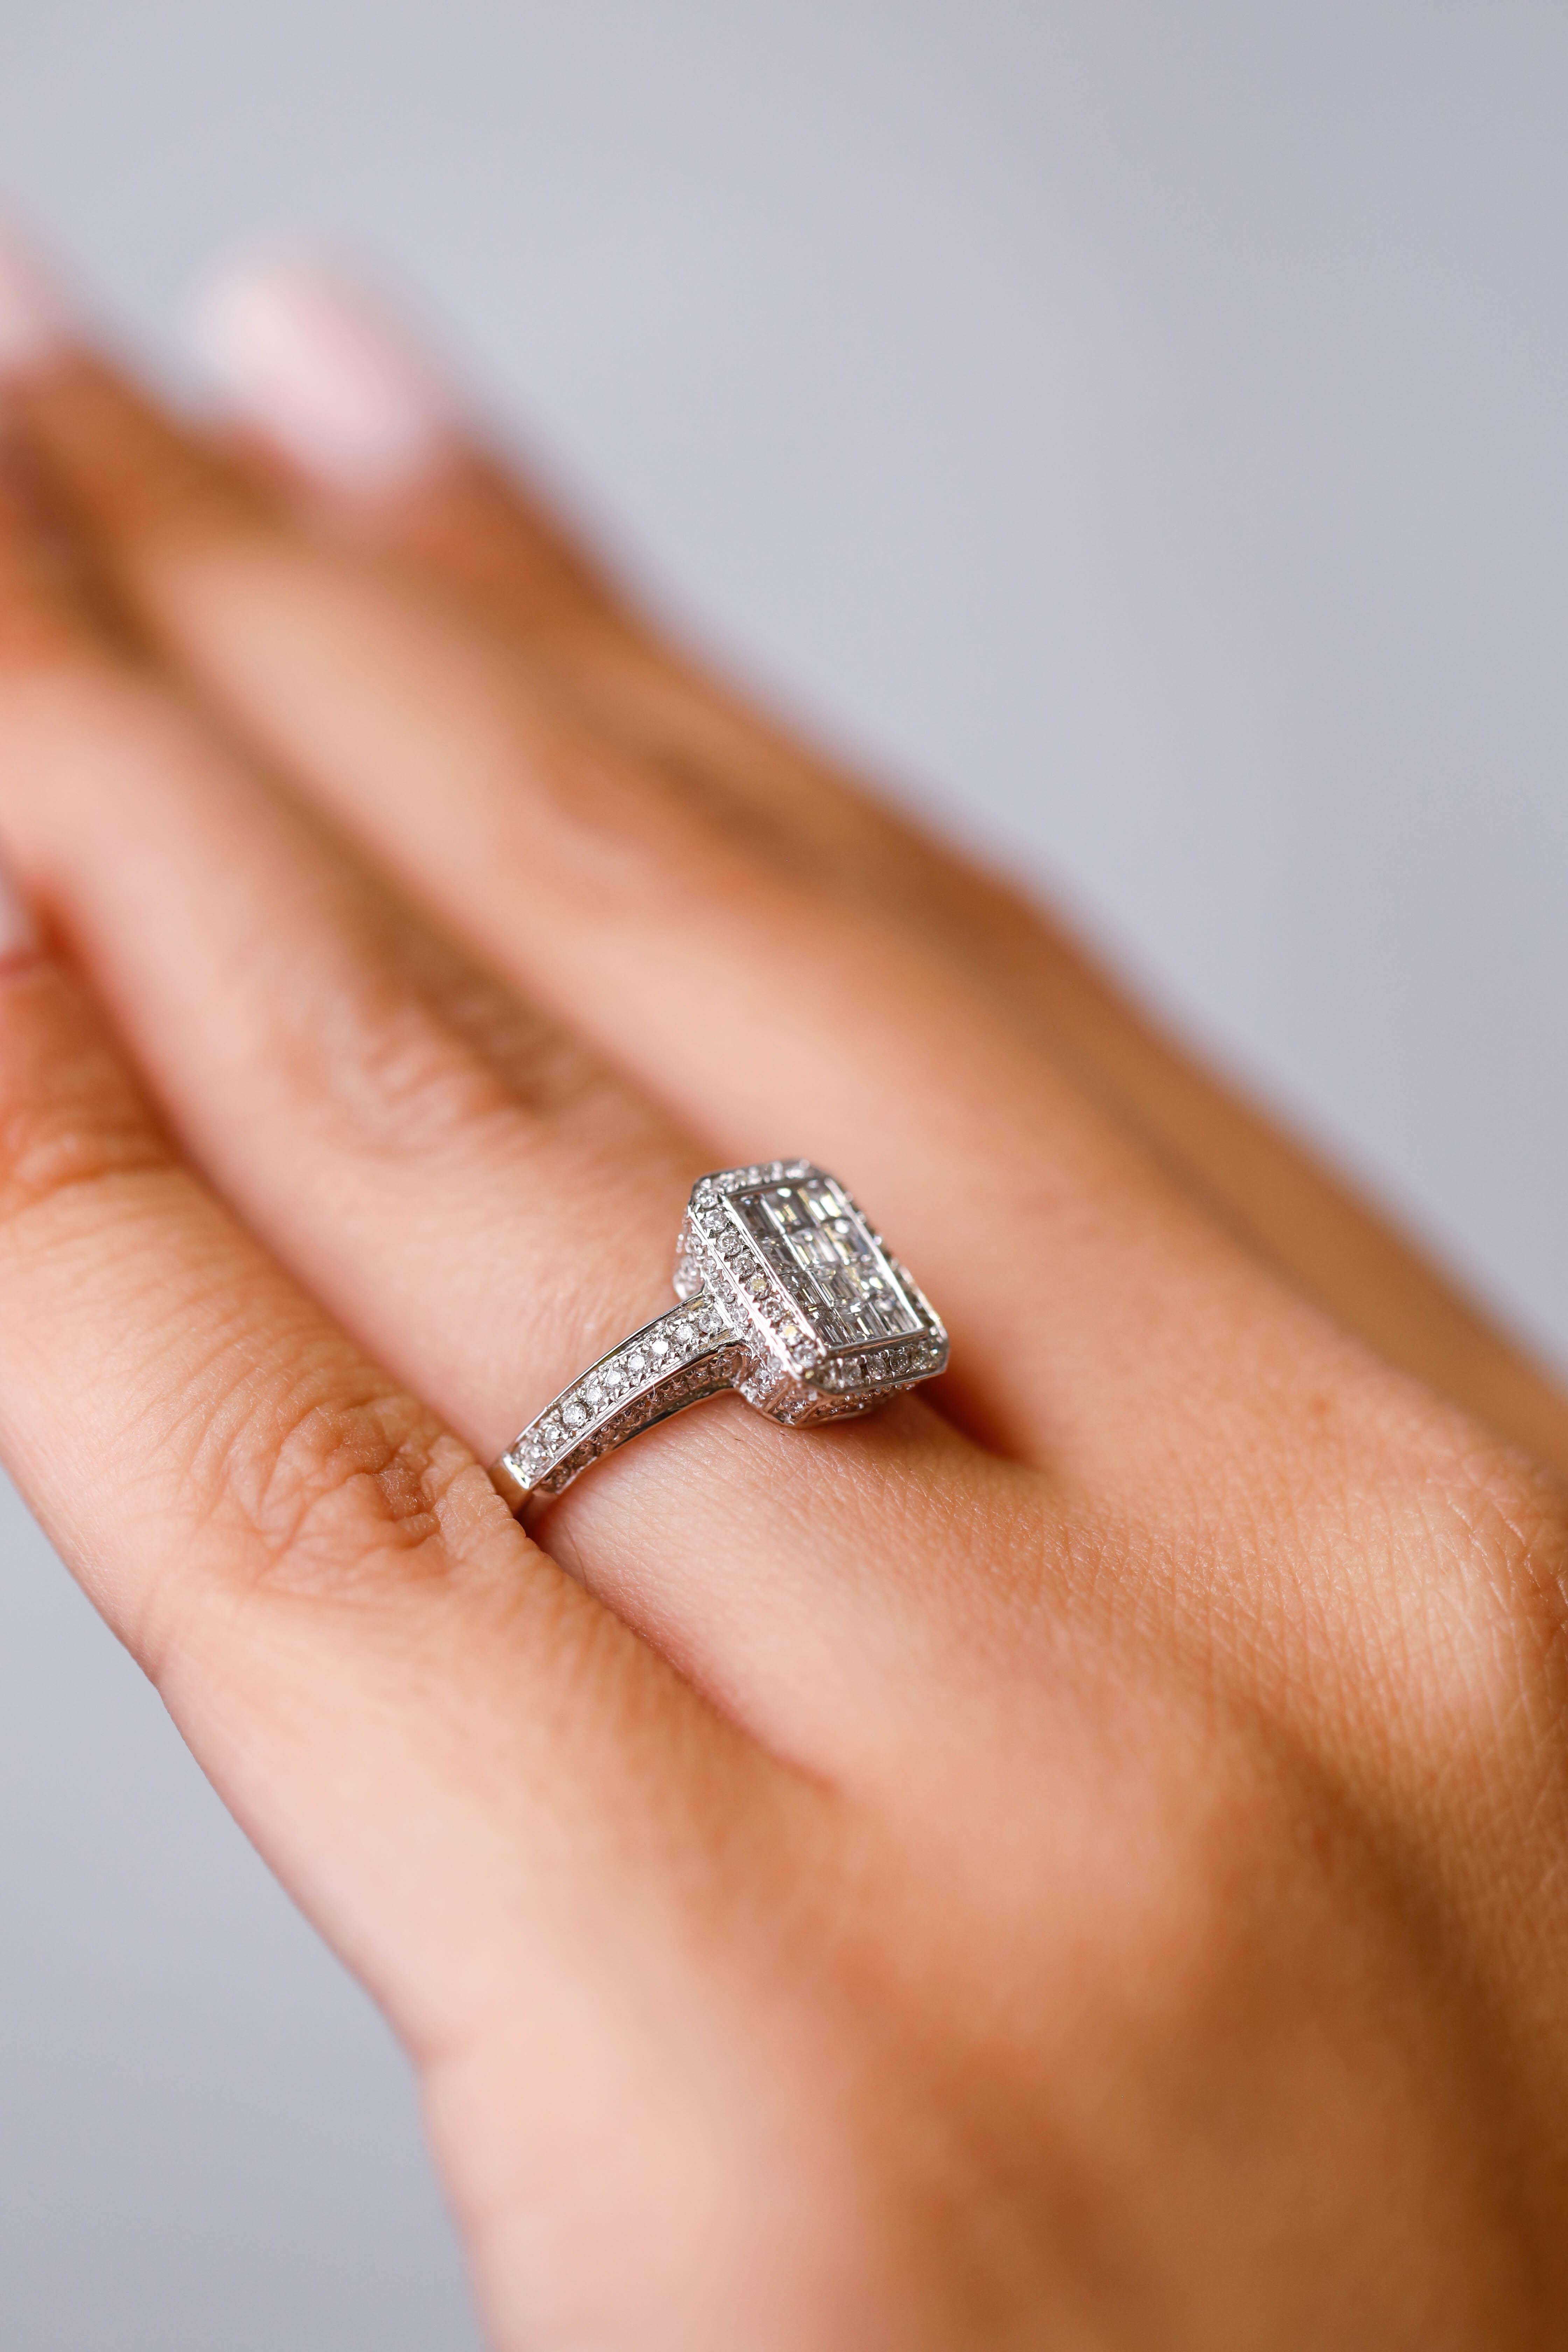 Asscher Cut Gregg Ruth 18k White Gold 1.0 Carat Princess Cut Diamond Engagement Ring Sz 6.5 For Sale